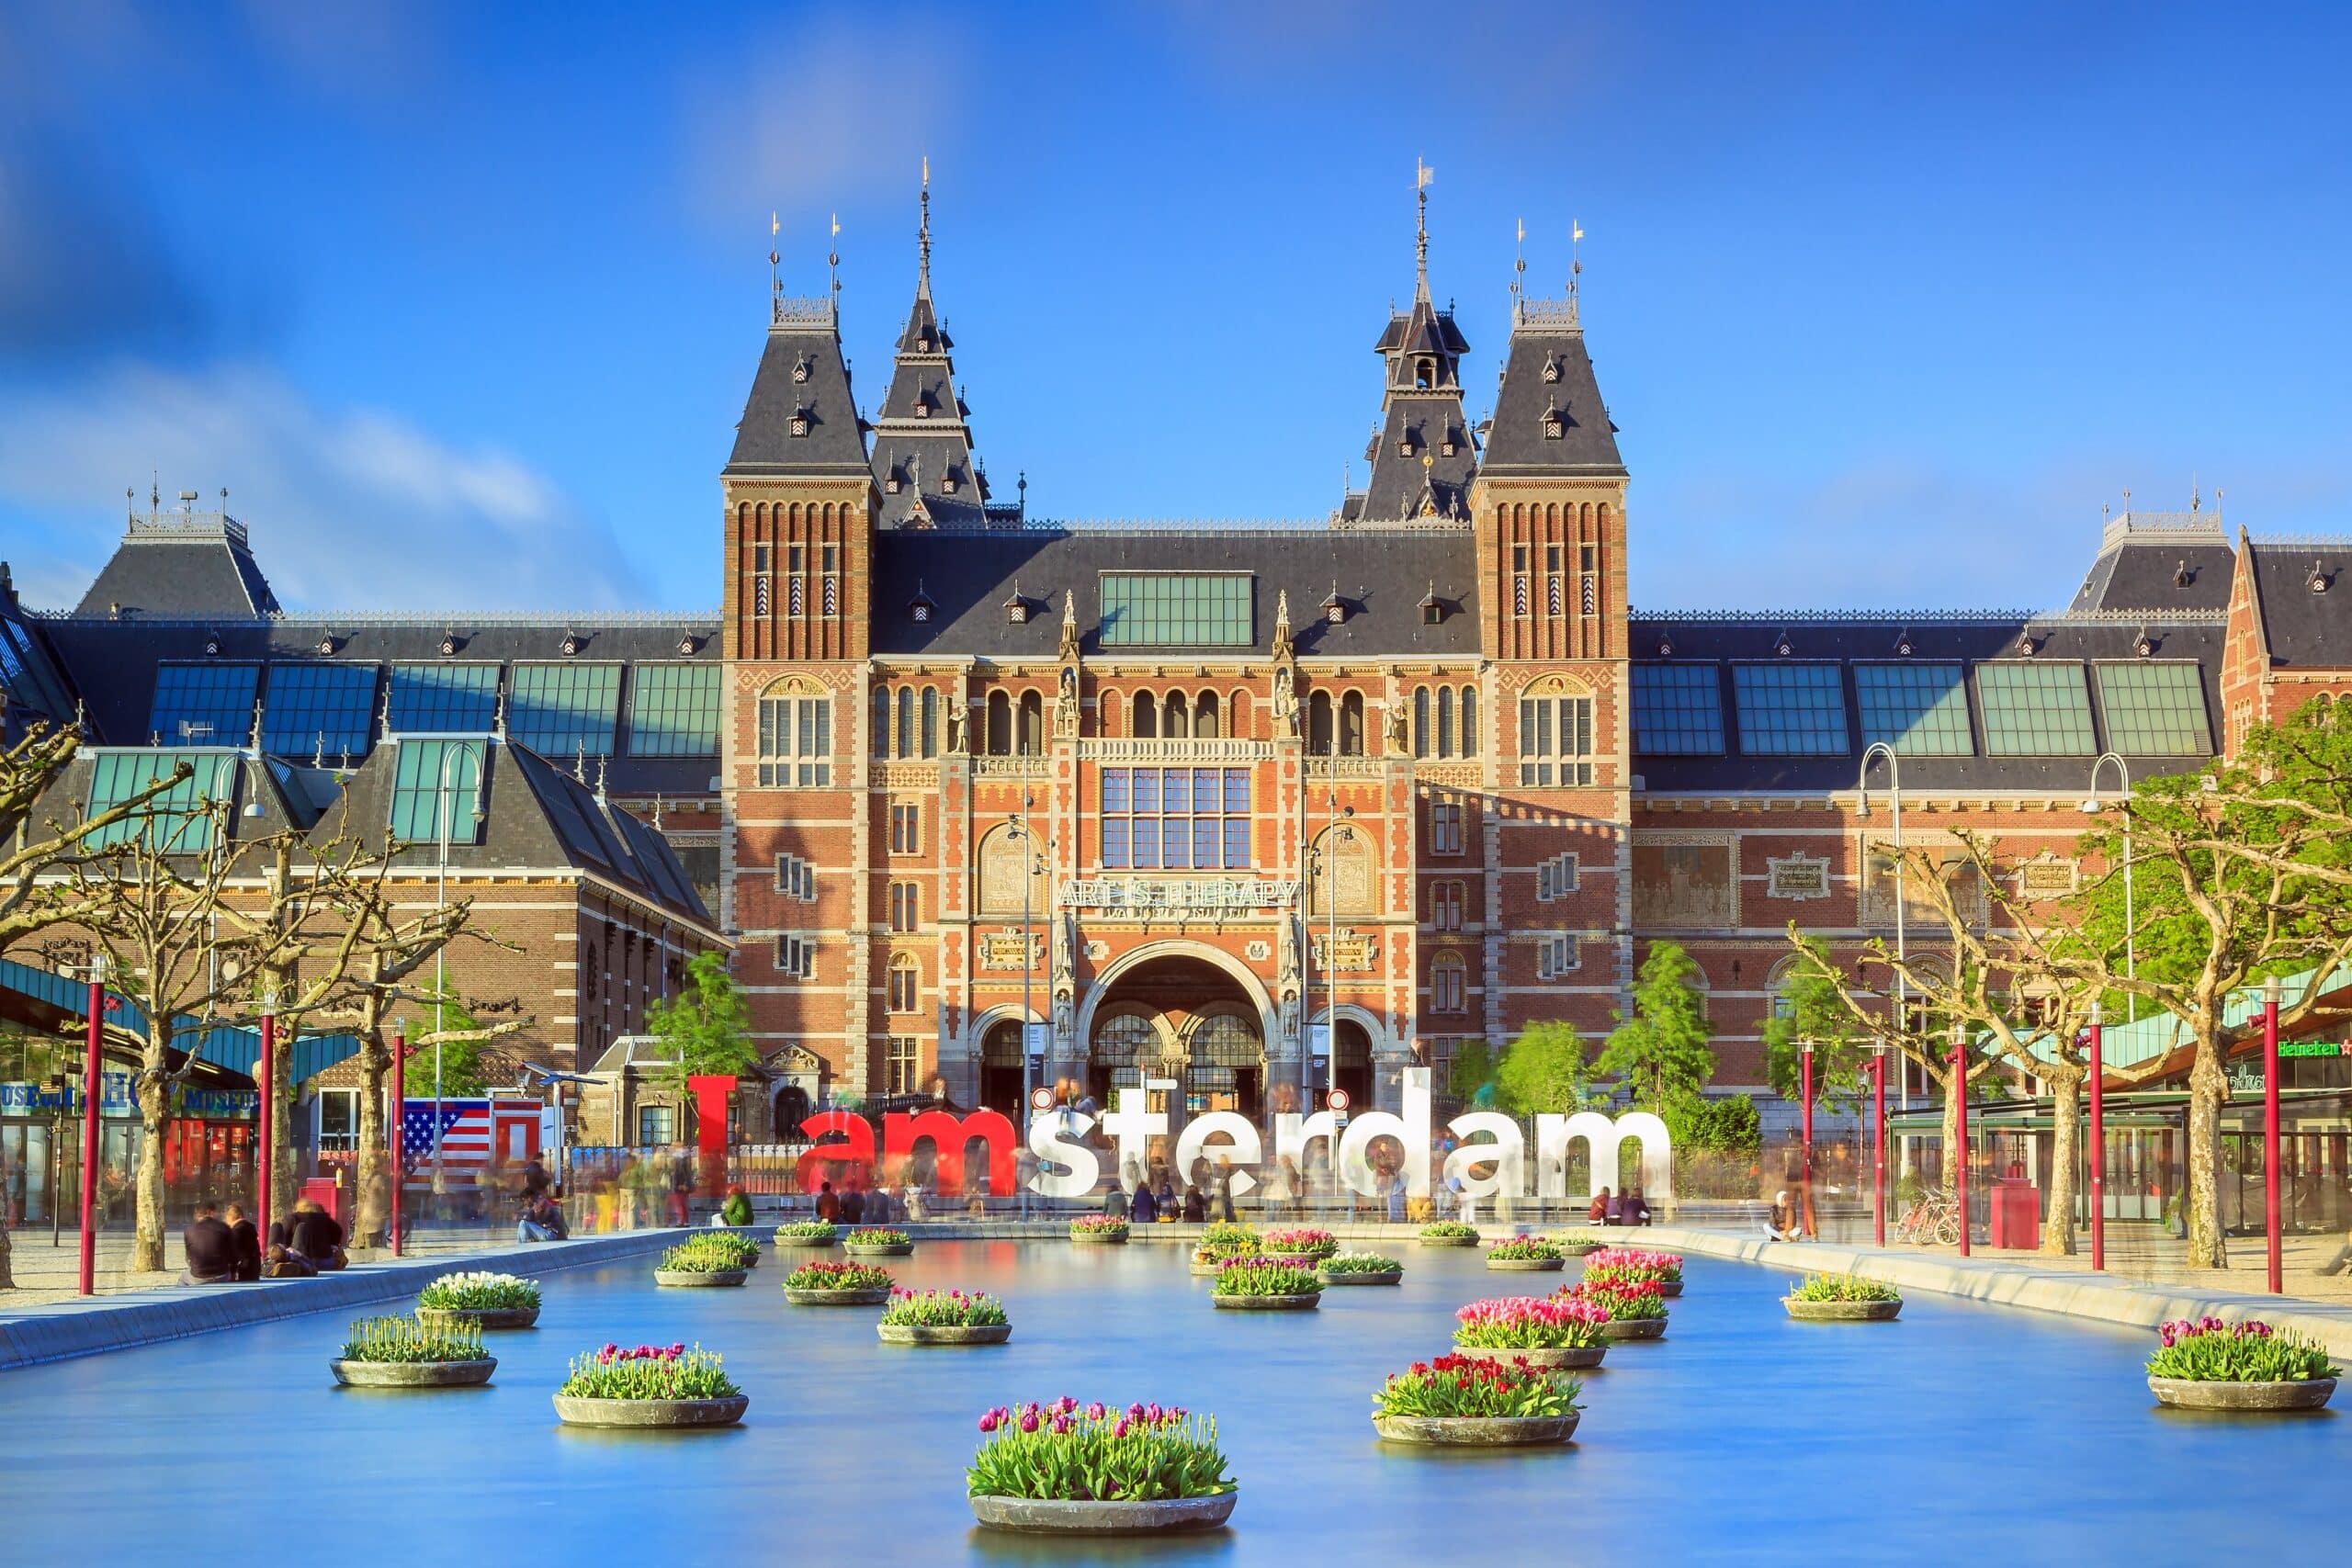 Dit zijn de 15 leukste bezienswaardigheden van Amsterdam - Dolopreizen.nl